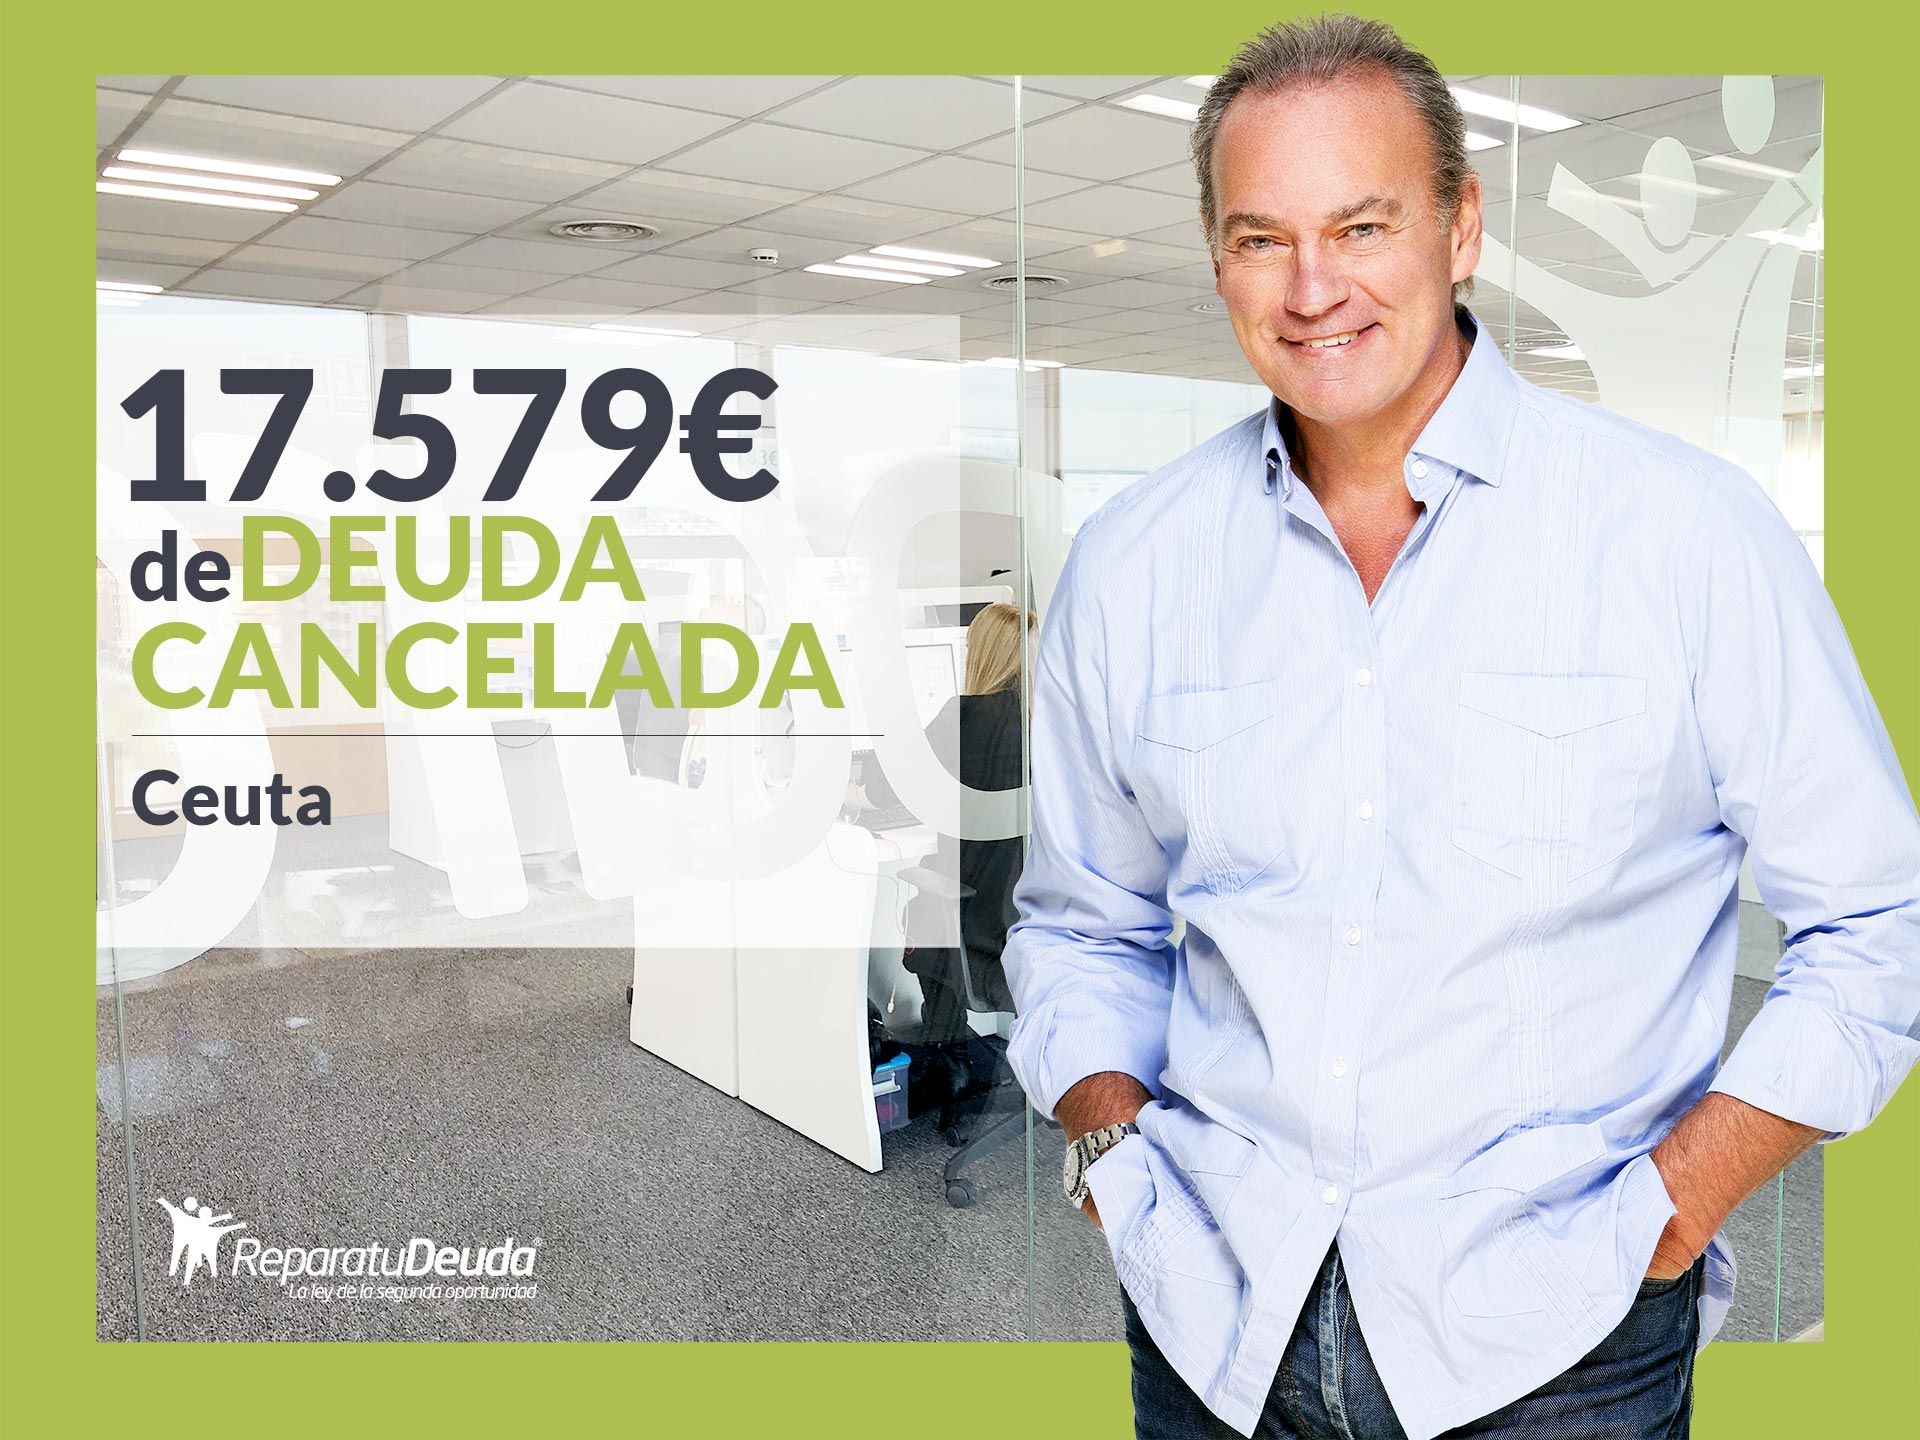 Repara tu Deuda Abogados cancela 17.579? en Ceuta con la Ley de Segunda Oportunidad